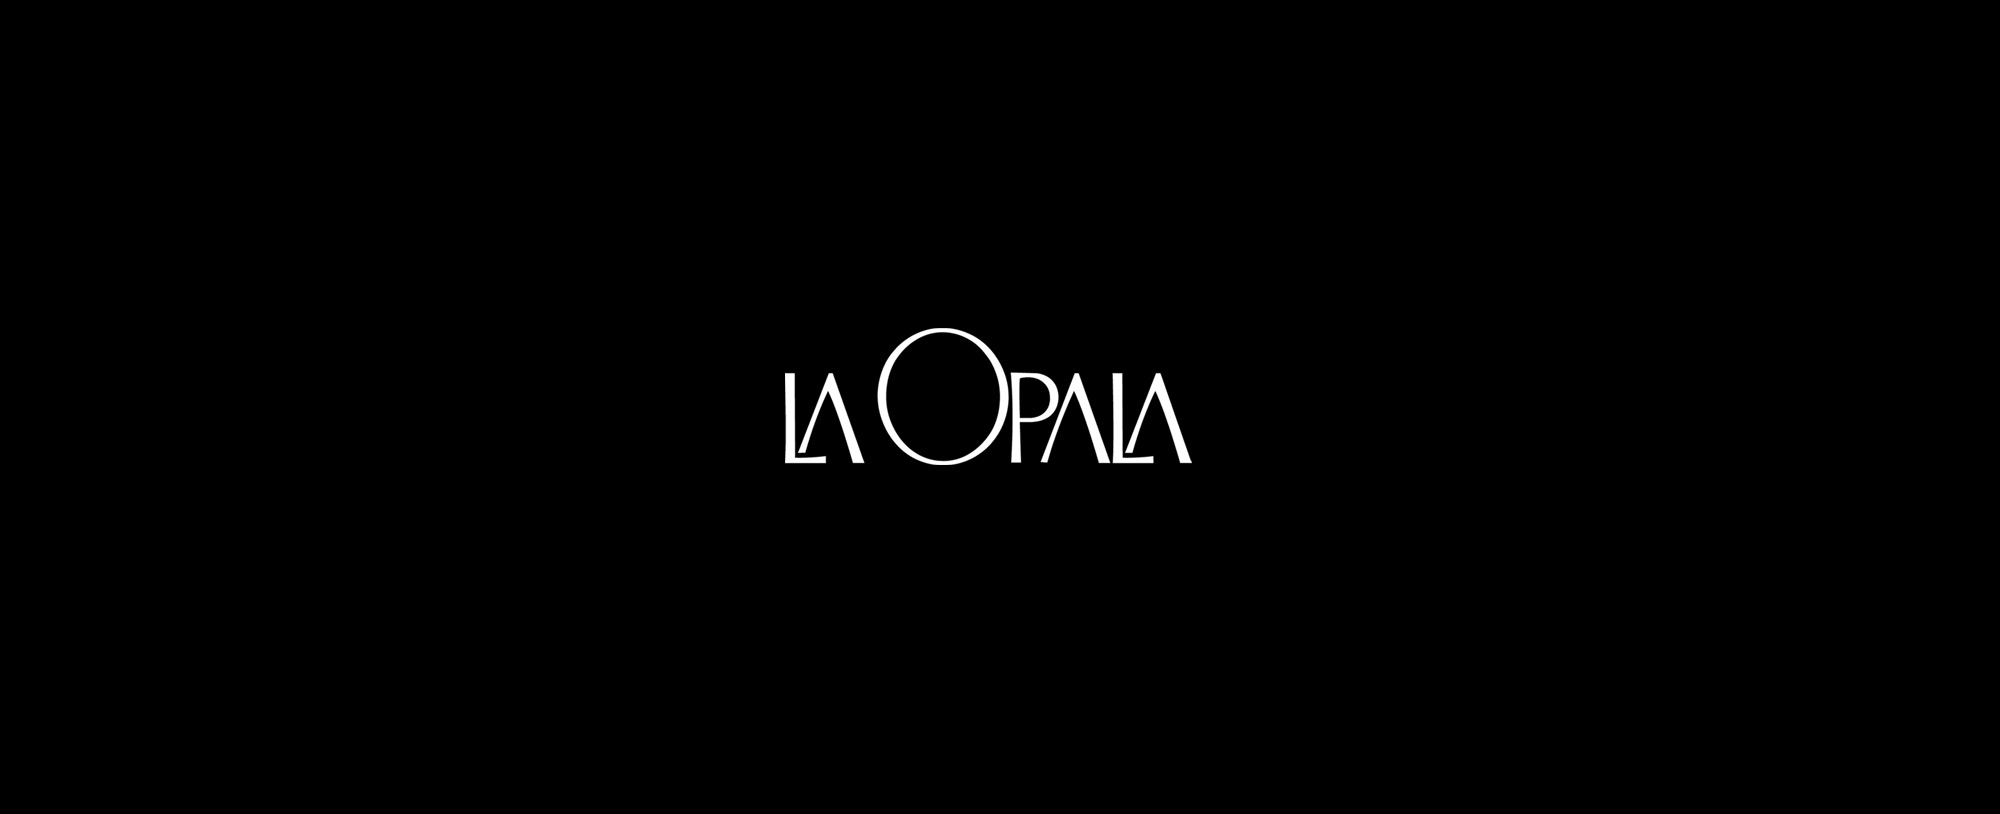 laopala-logo